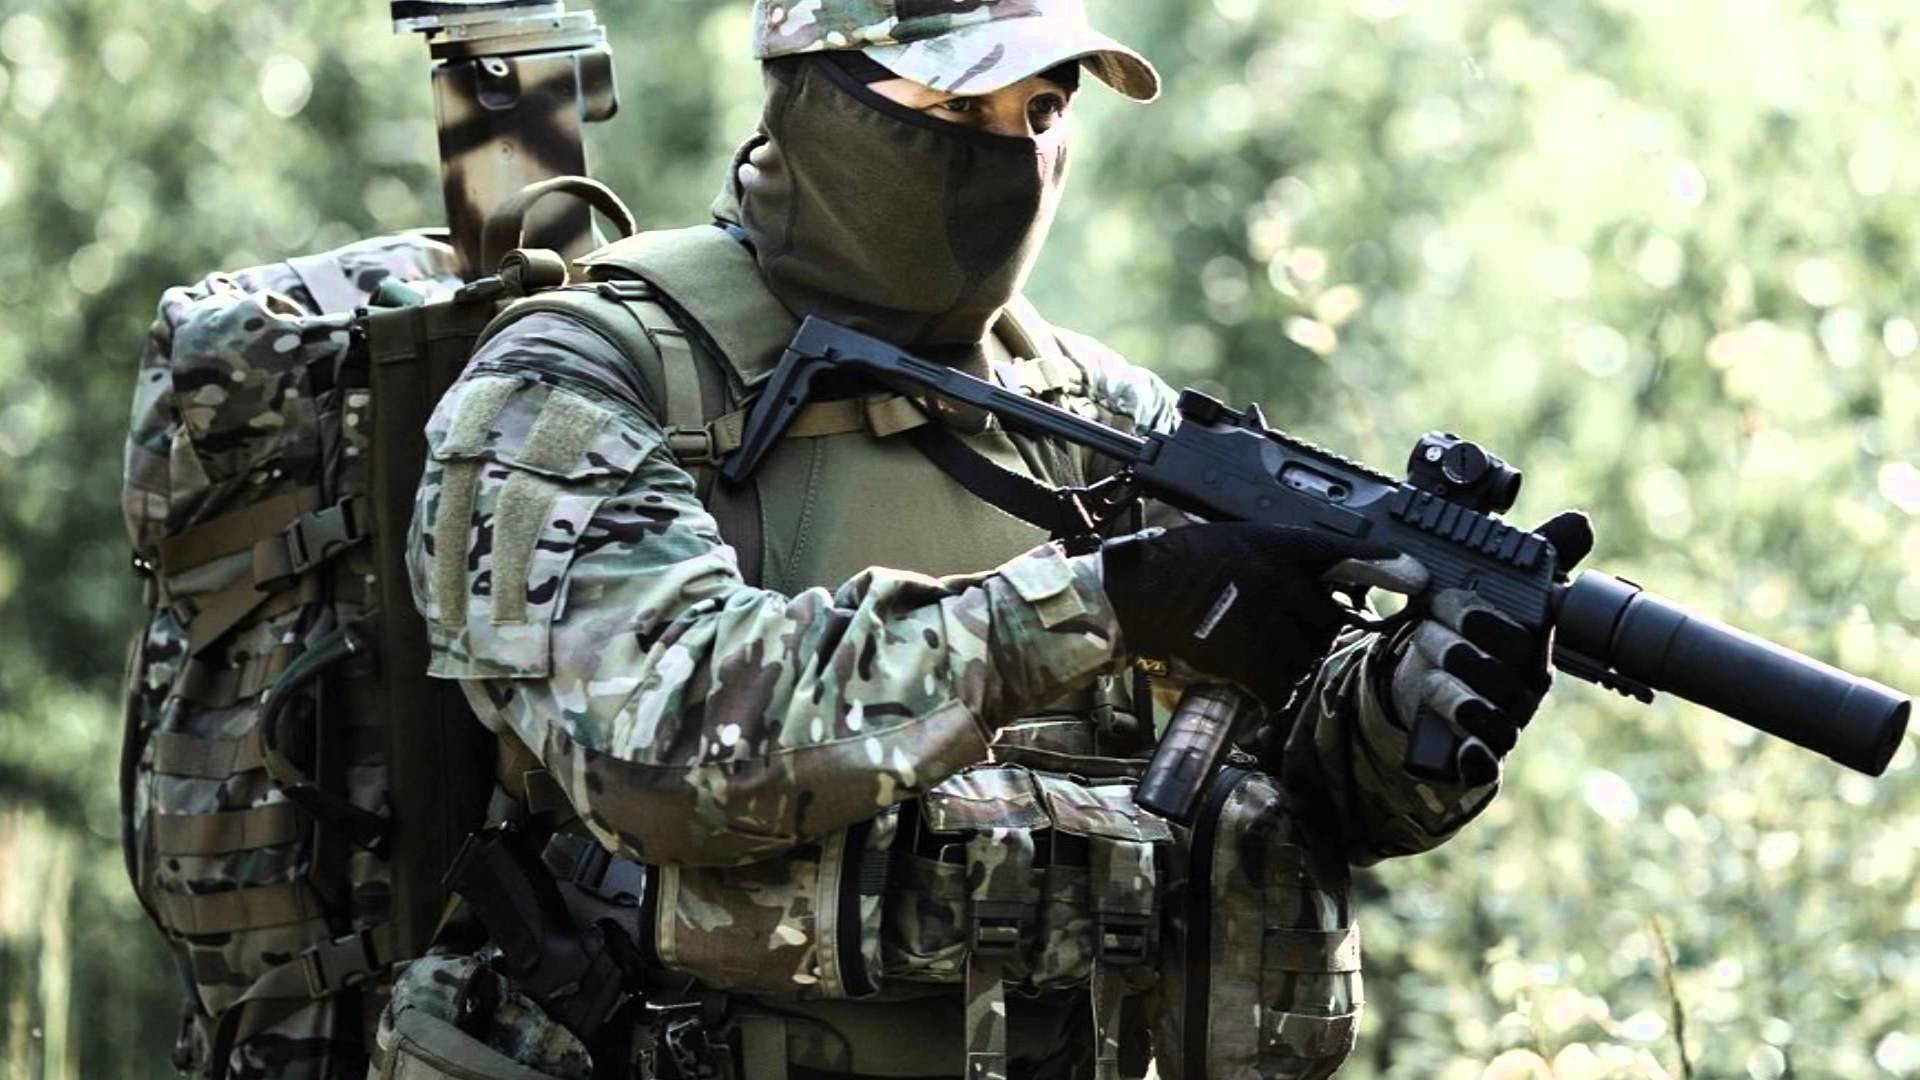 1920x1080 Ð Ð¾ÑÑÐ¸Ñ ÐÐ¾Ð¾ÑÑÐ¶ÐµÐ½Ð½ÑÐµ Ð¡Ð¸Ð»Ñ - Armed Forces of the Russian Federation - 2013 -  (PART 3) HD - YouTube